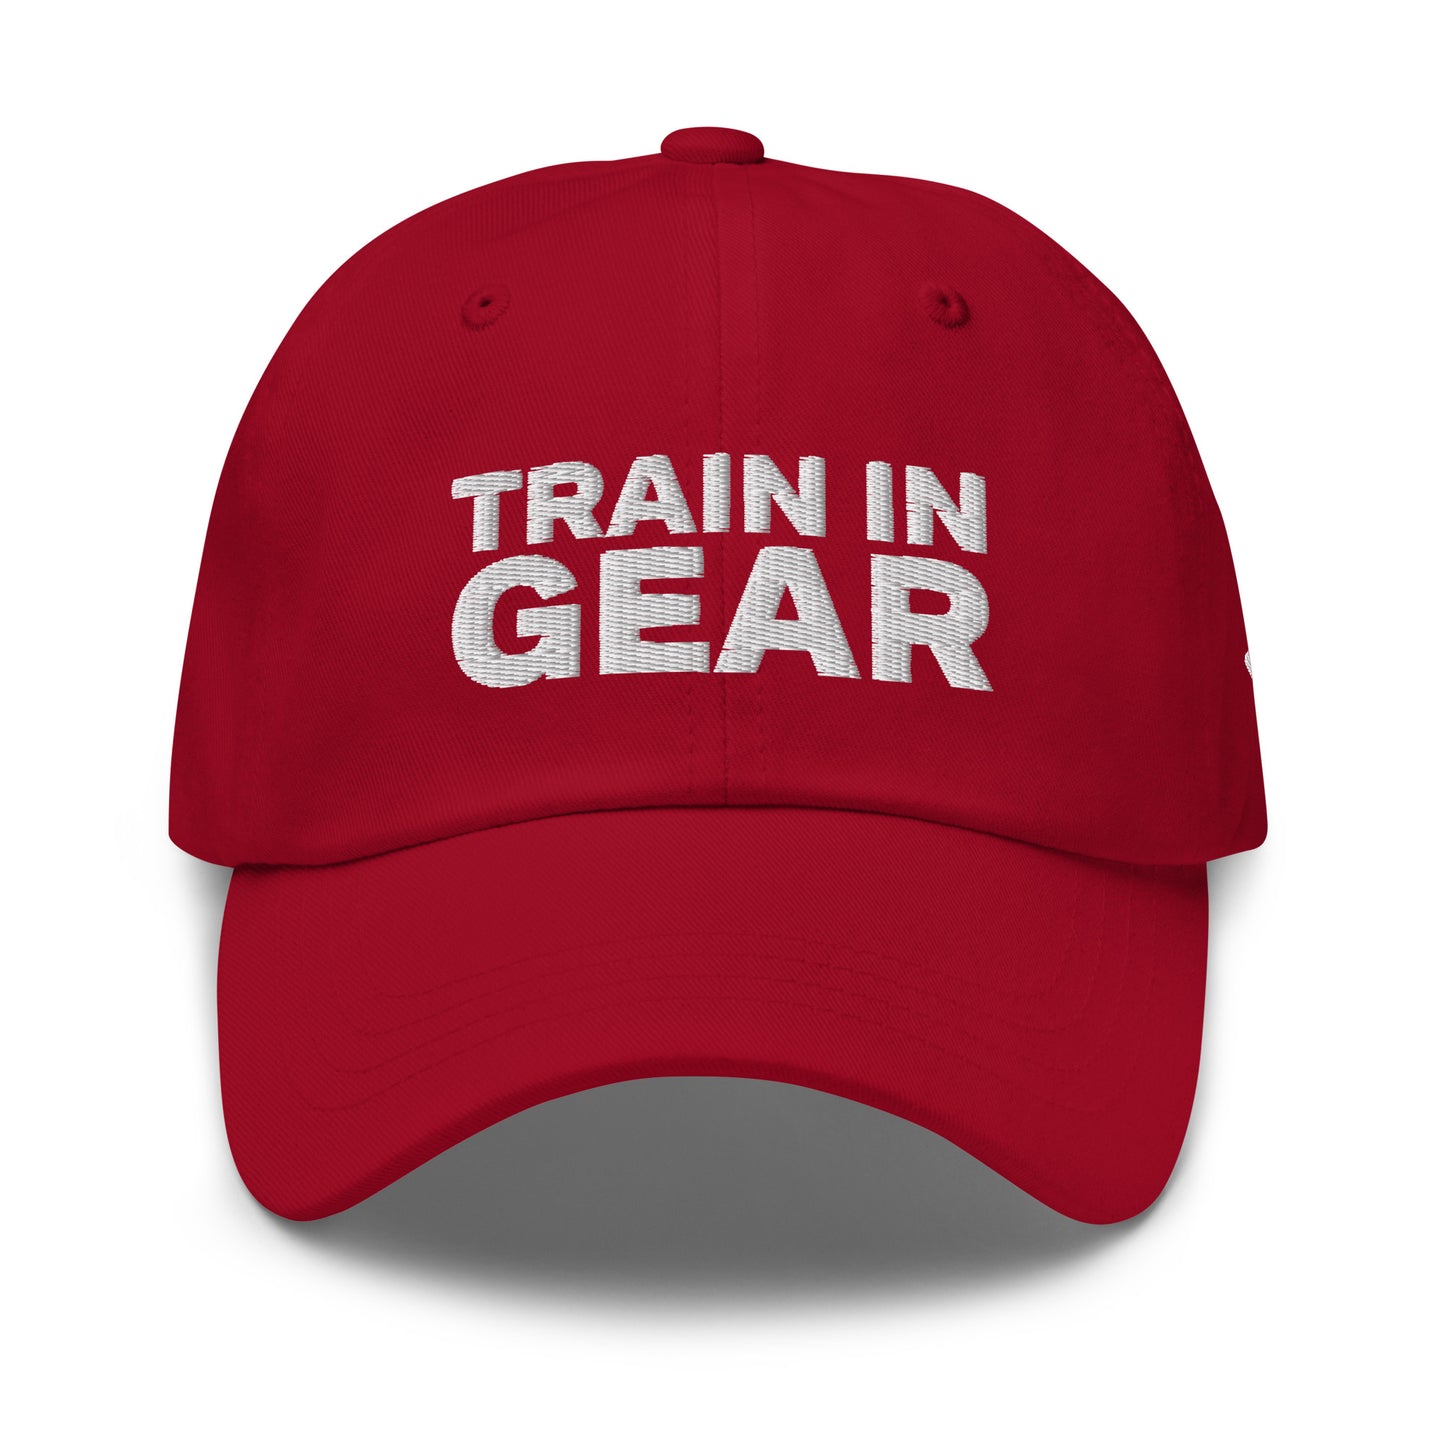 Train in Gear Firefighter hat. Red baseball hat.